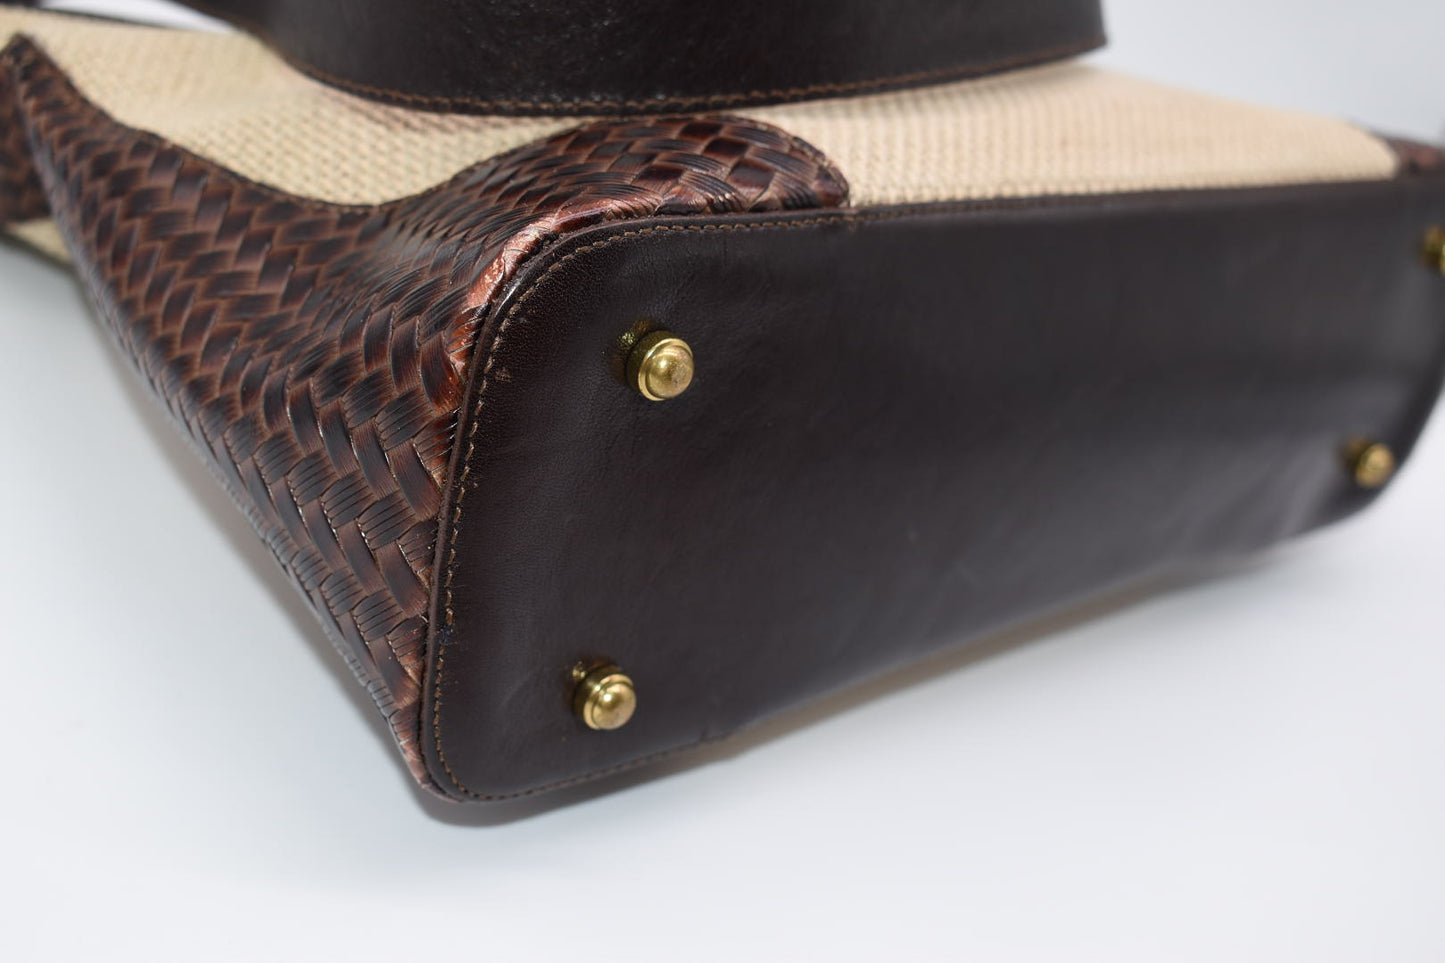 Brahmin Leather & Natural Canvas Woven Shoulder Bag